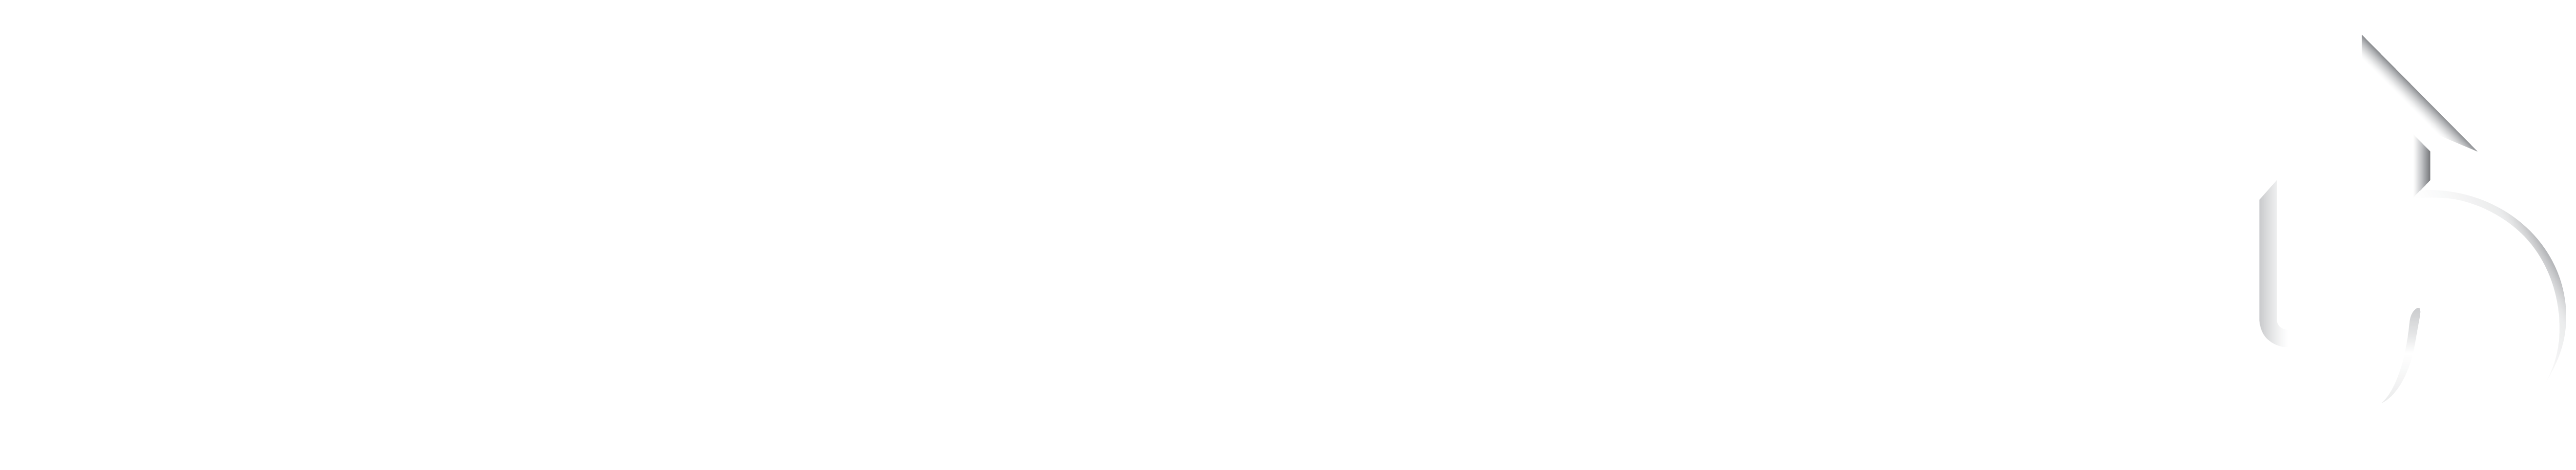 Logo hoedlmayr